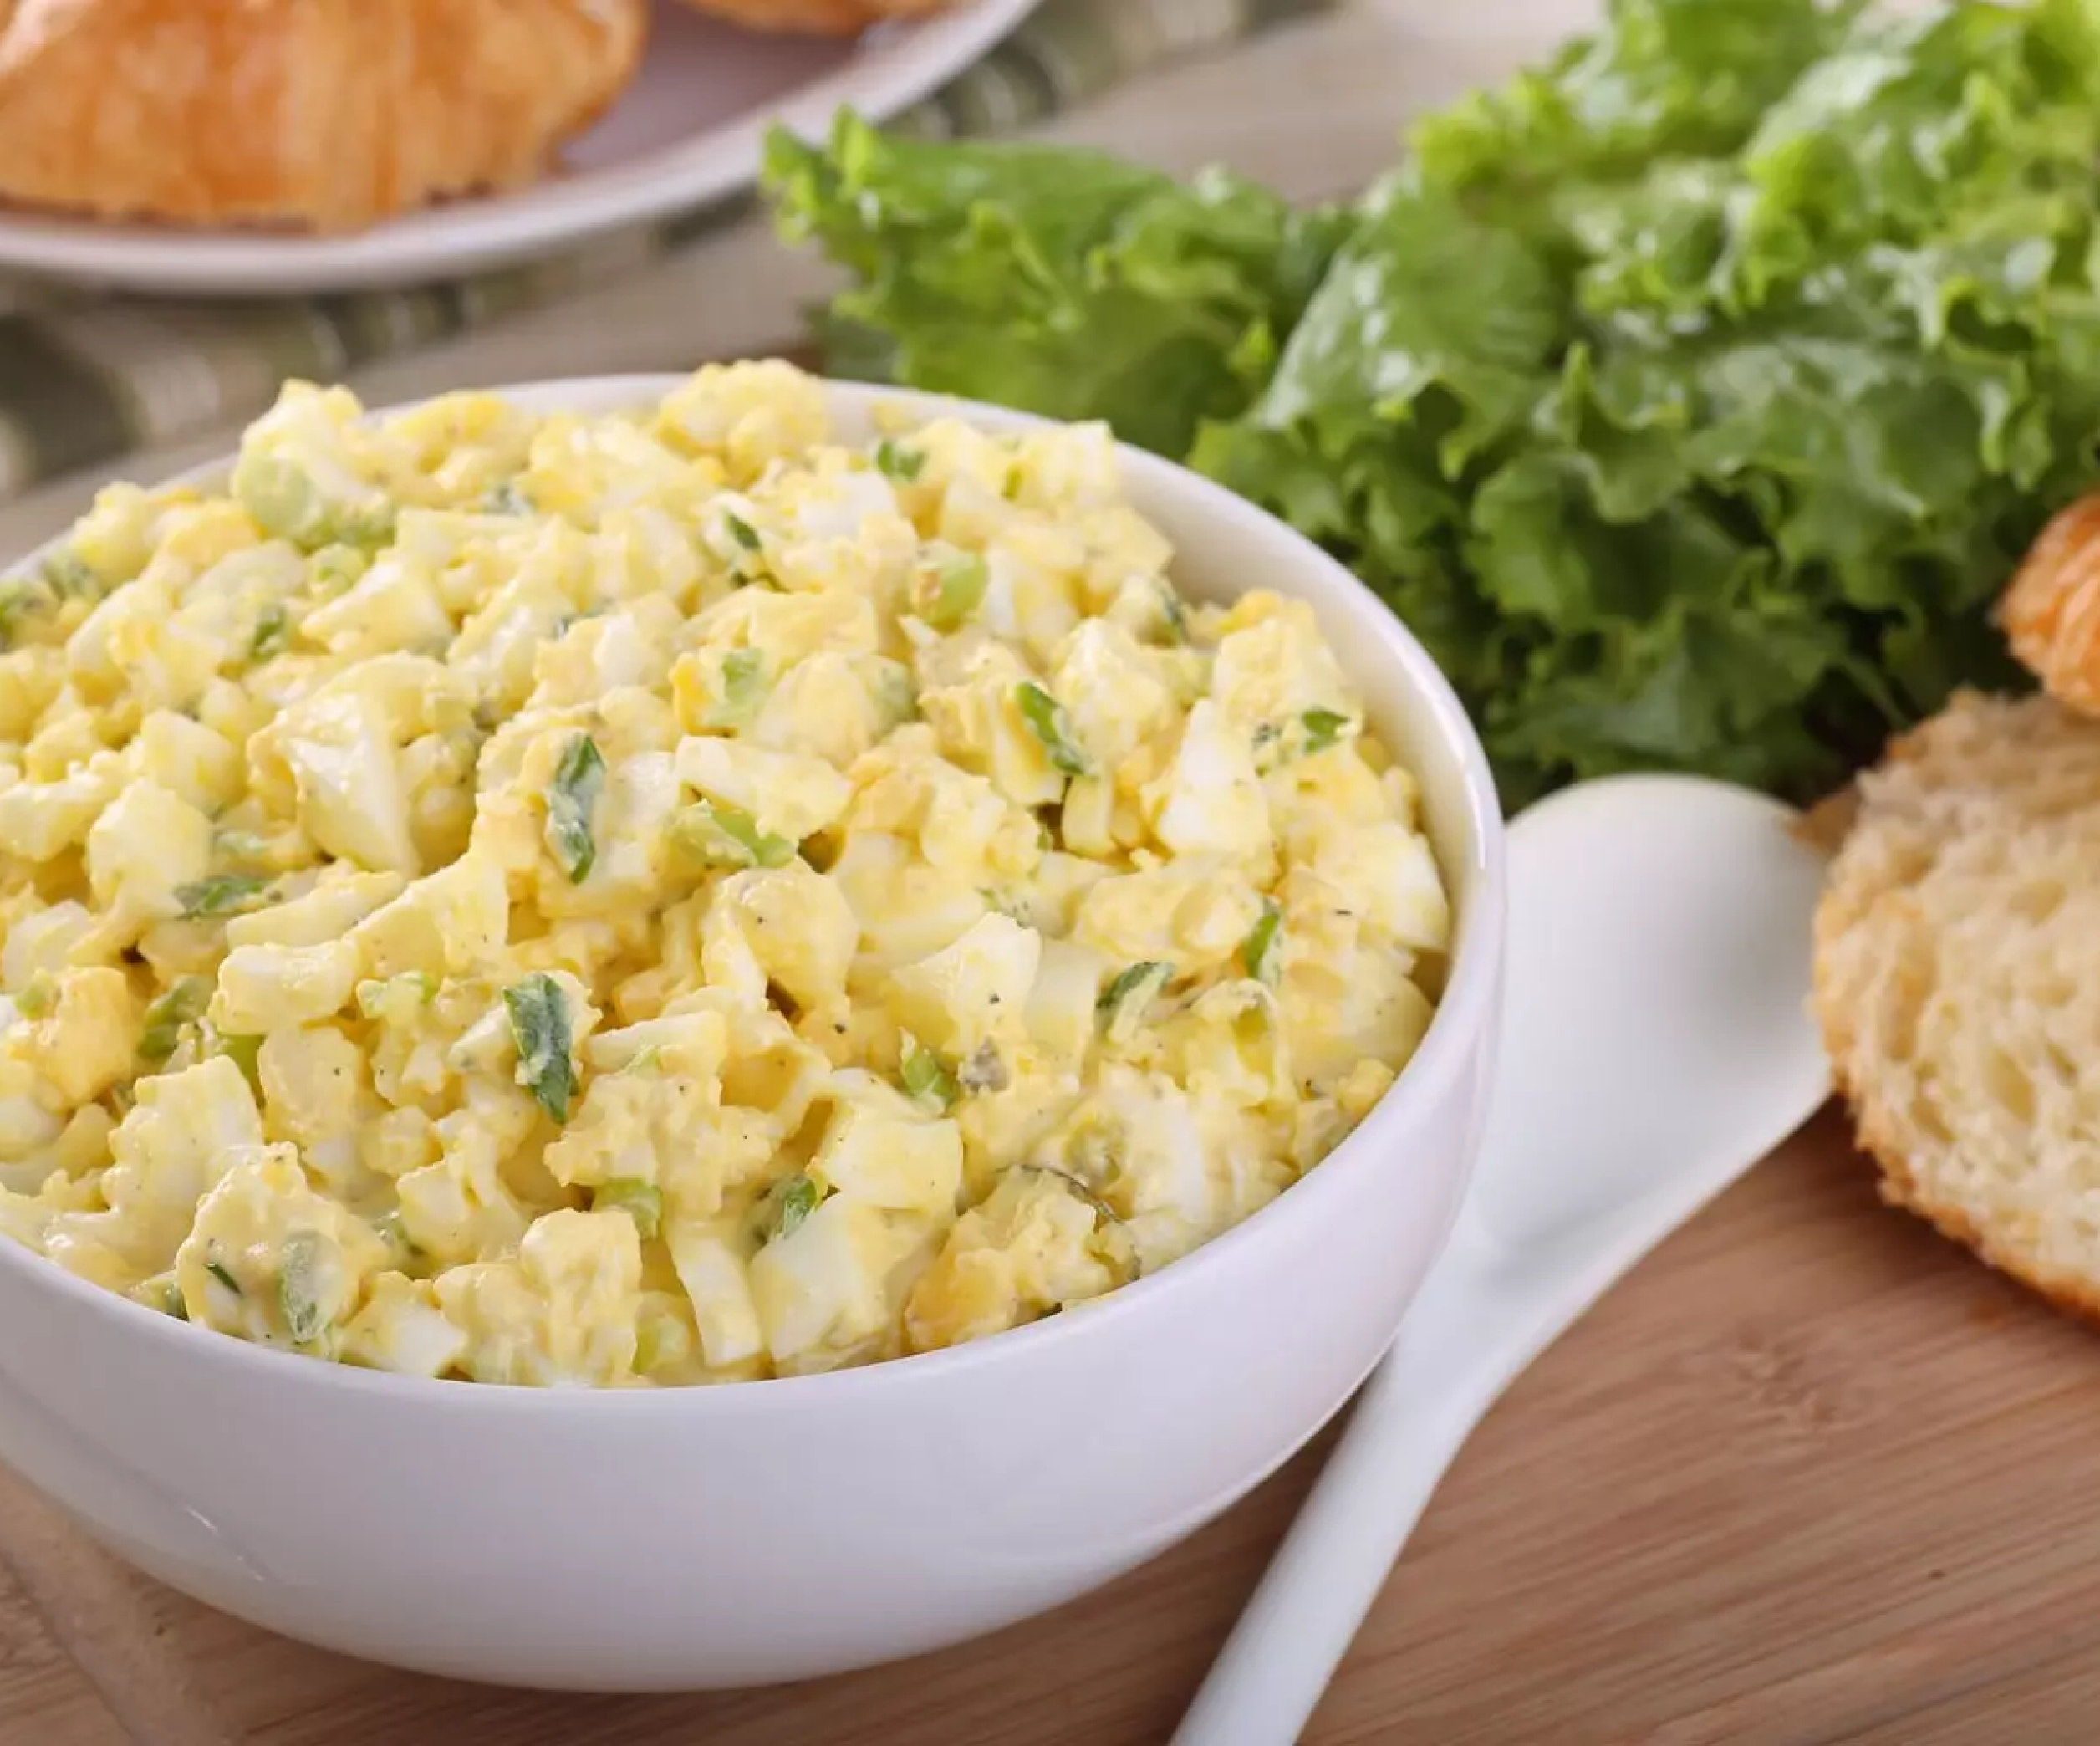 Dishes never. Яичный салат. Австрийский салат из картофеля и яиц. ПП ужин из яиц. Салат австрийский рецепт классический.